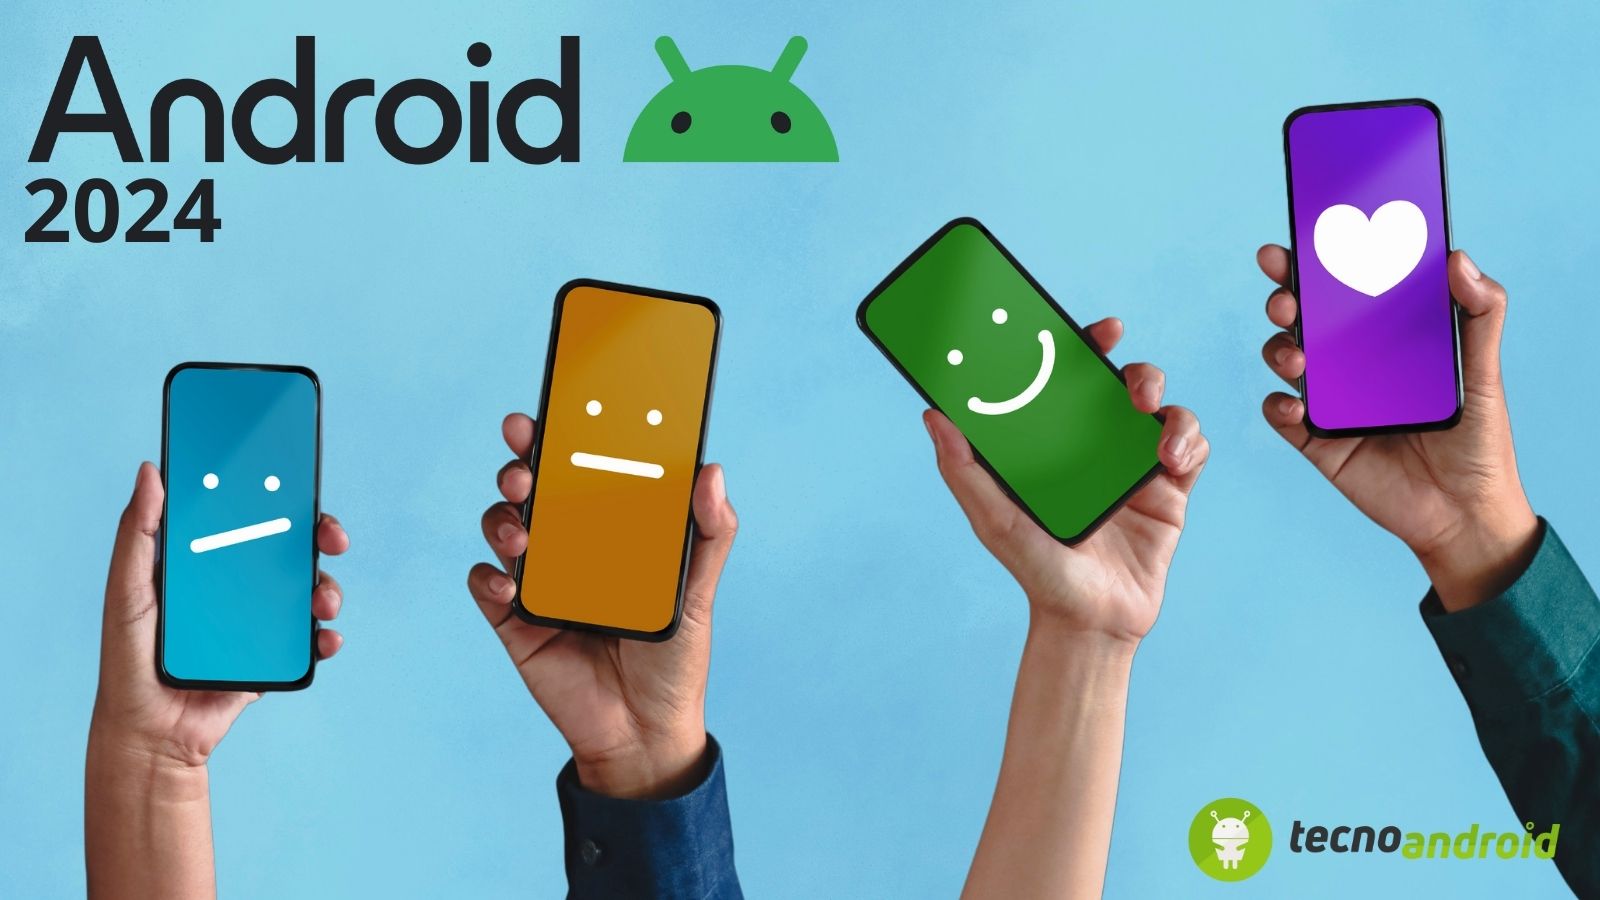 Android: marchi, browser e versioni più utilizzate nel 2024